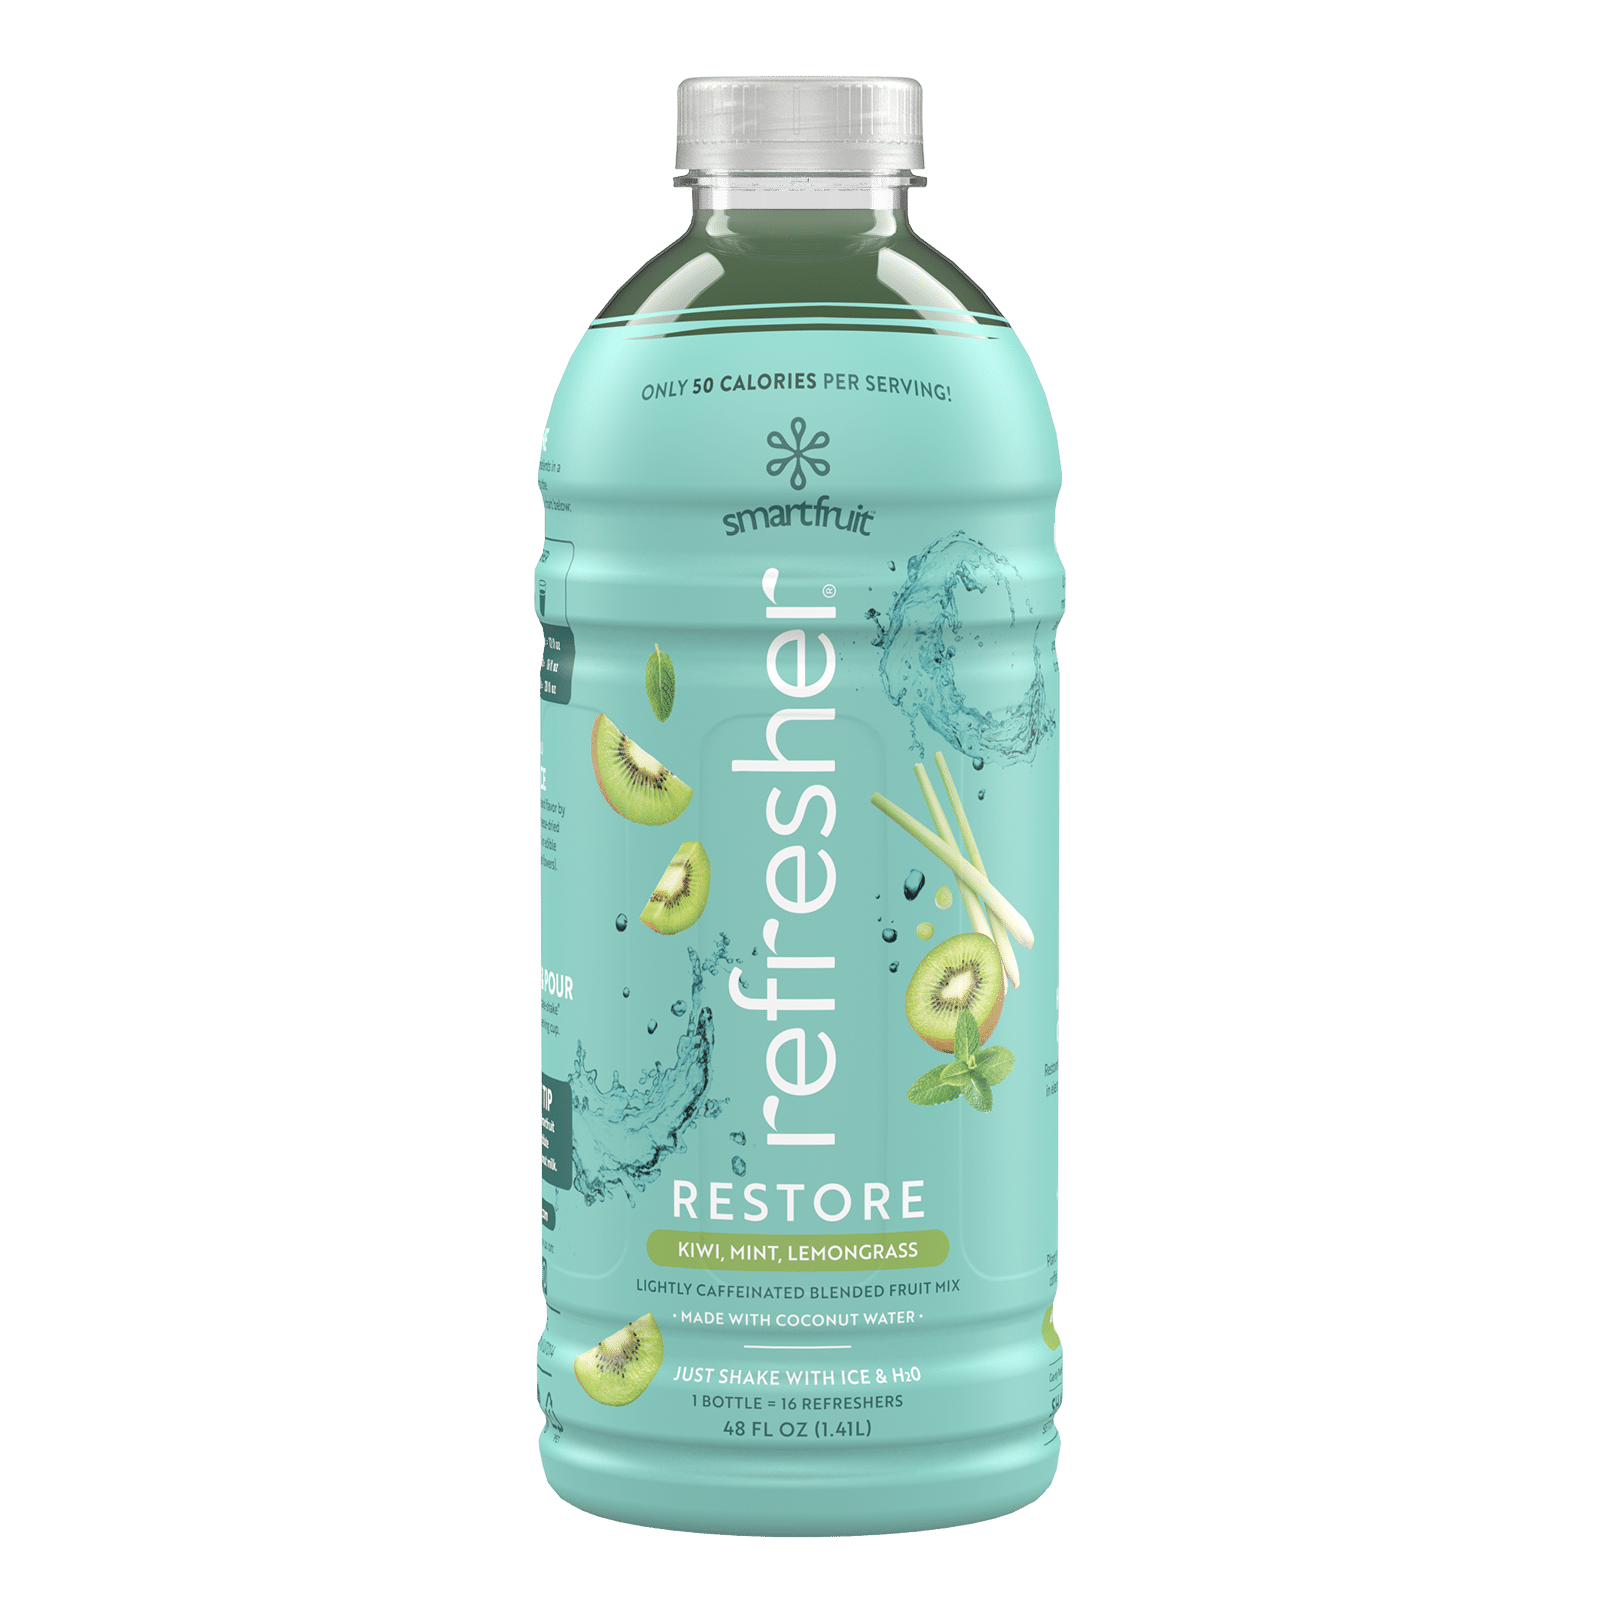 Smartfruit Restore Refresher bottle